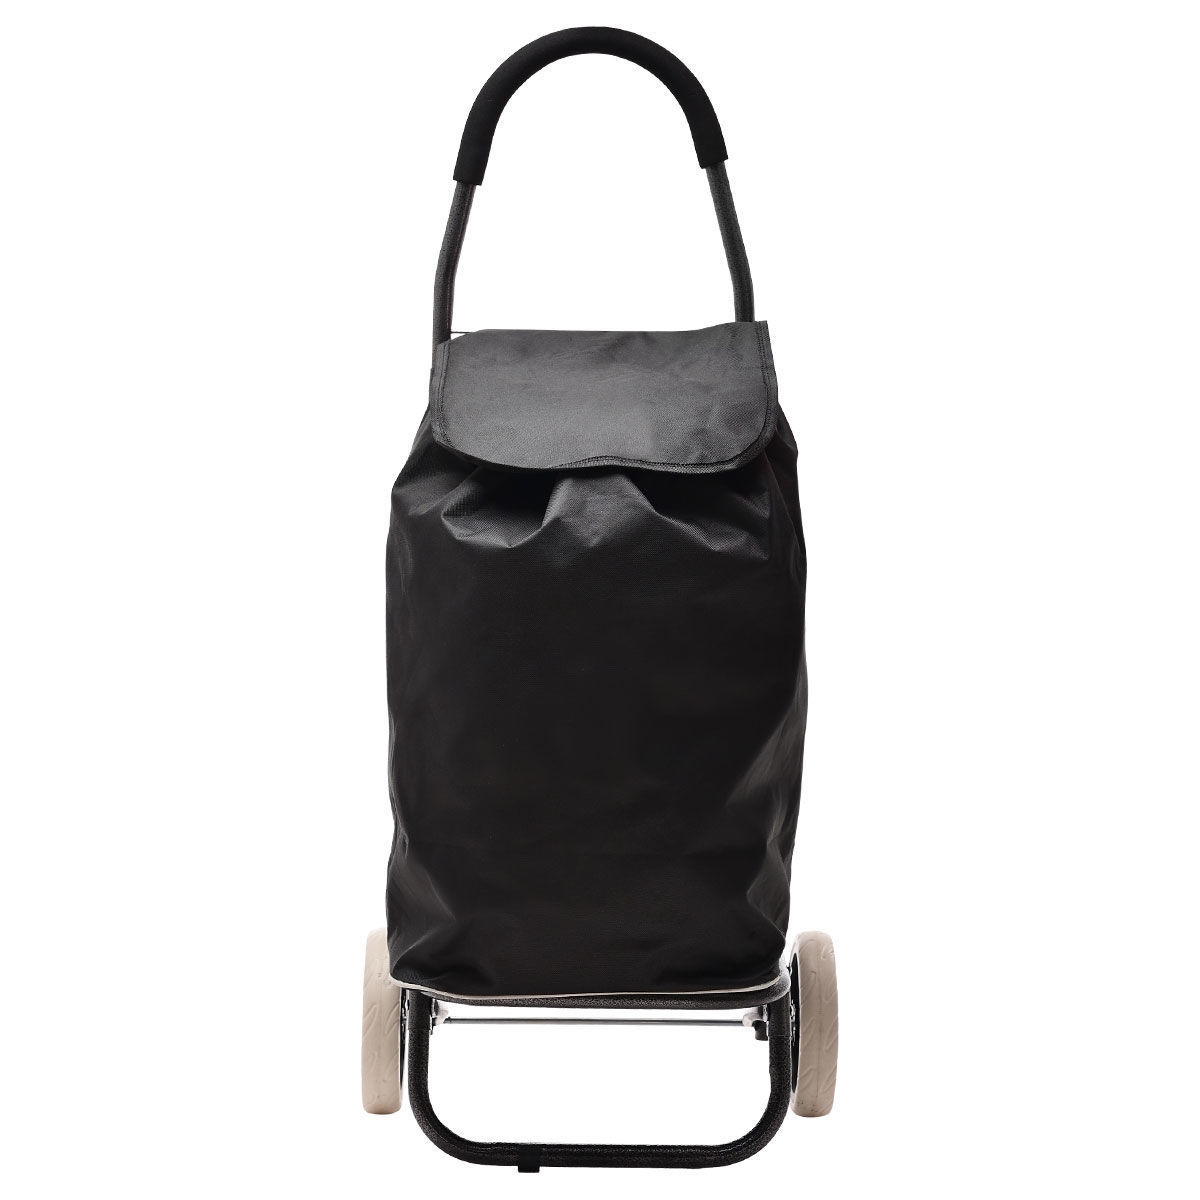 Καρότσι Λαΐκής Μεταλλικό-Υφασμάτινο Black Estia 46ltr-35,5×23,5×95,8εκ. 04-14940 (Υλικό: Μεταλλικό, Ύφασμα: Polyester, Χρώμα: Μαύρο) – estia – 04-14940